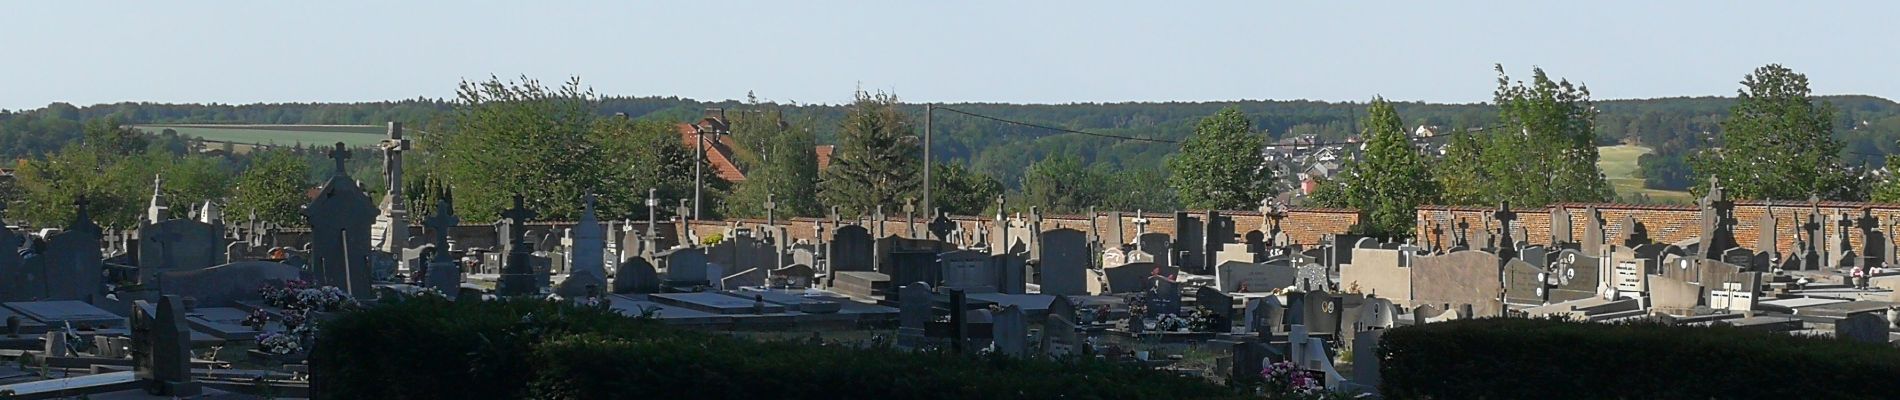 POI Braine-le-Château - Vue sur le cimetière de Braine-Le-Château. - Photo